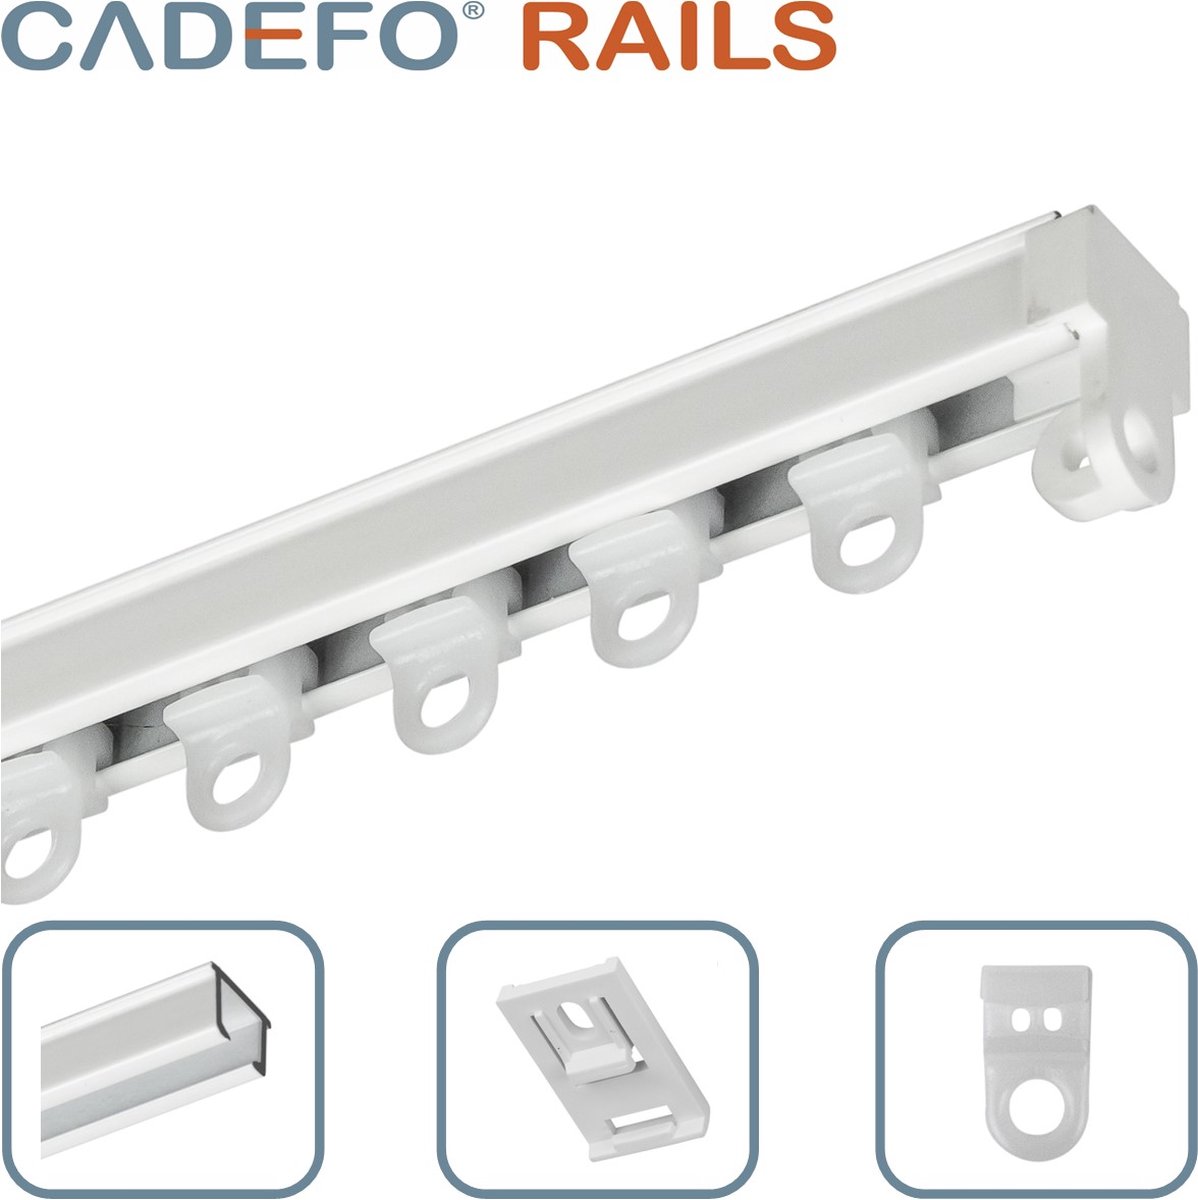 CADEFO RAILS (451 - 500 cm) Gordijnrails - Compleet op maat! - UIT 1 STUK - Leverbaar tot 6 meter - Plafondbevestiging - Lengte 458 cm